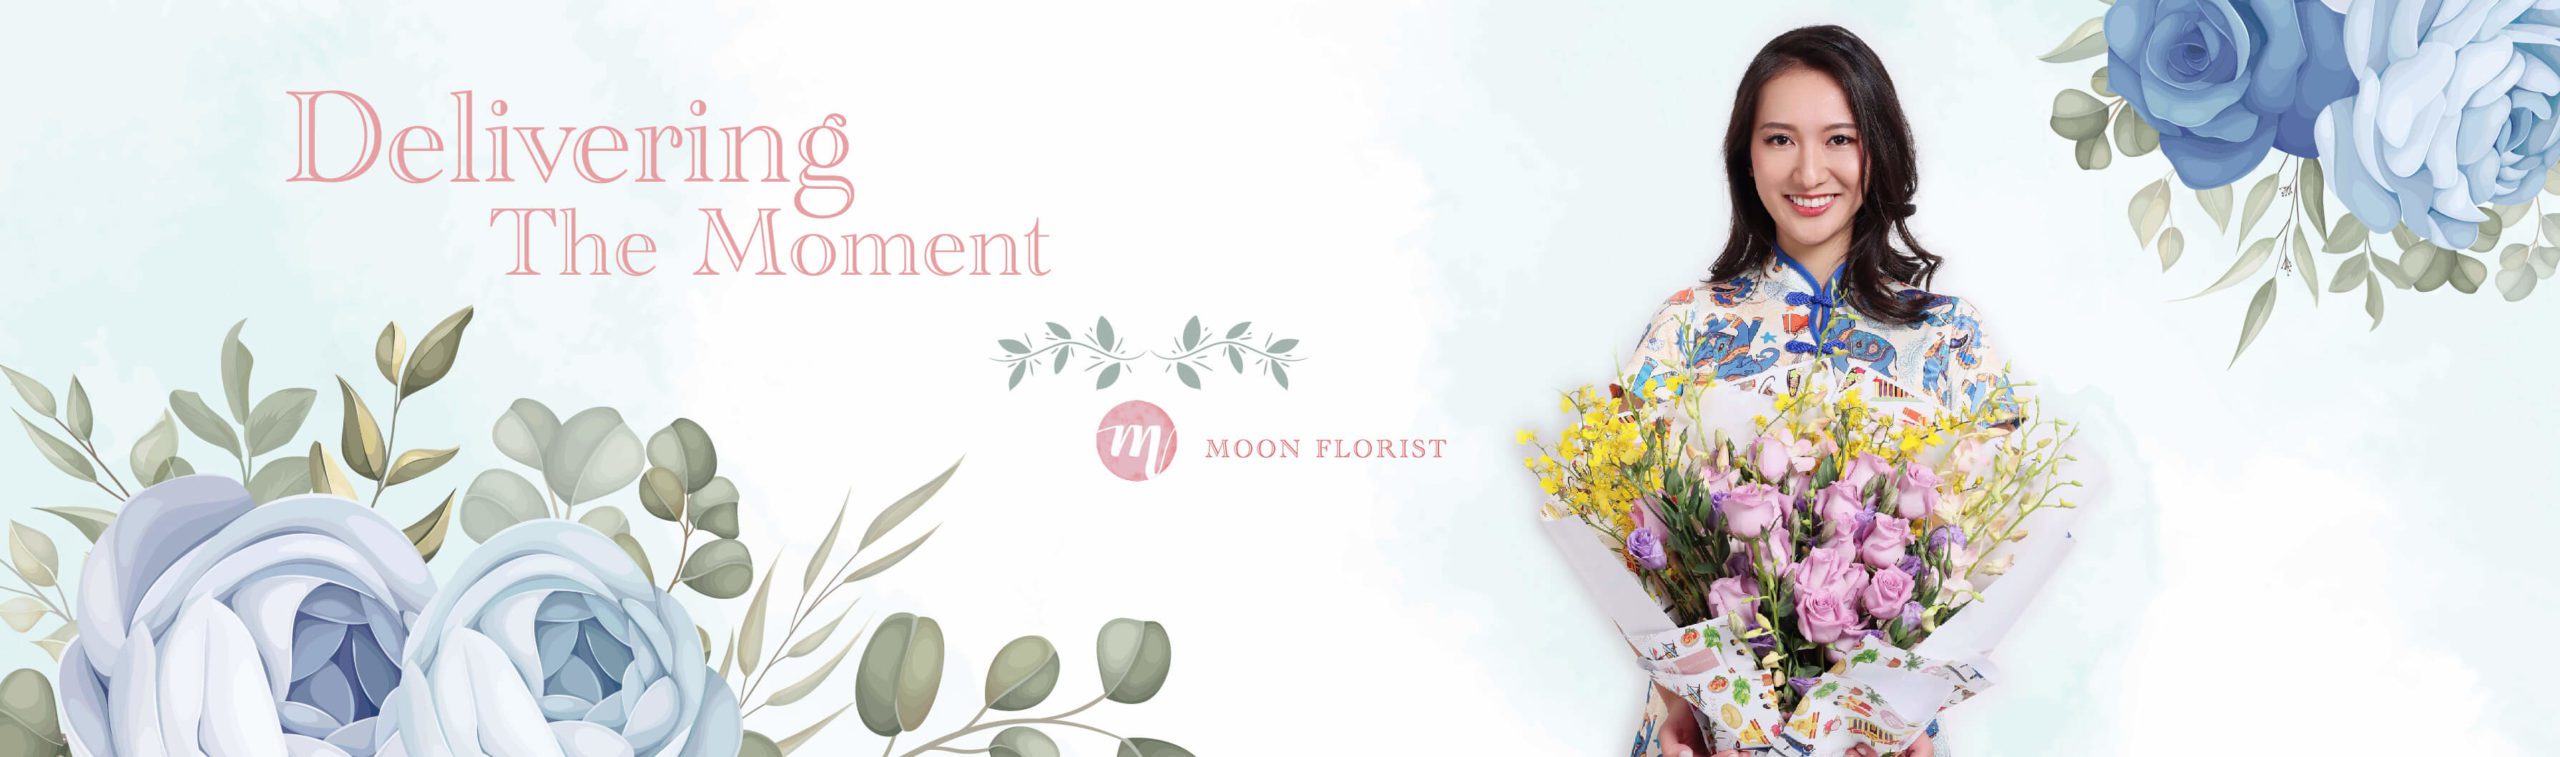 買花, 網上買花, Moon Florist -model banner01